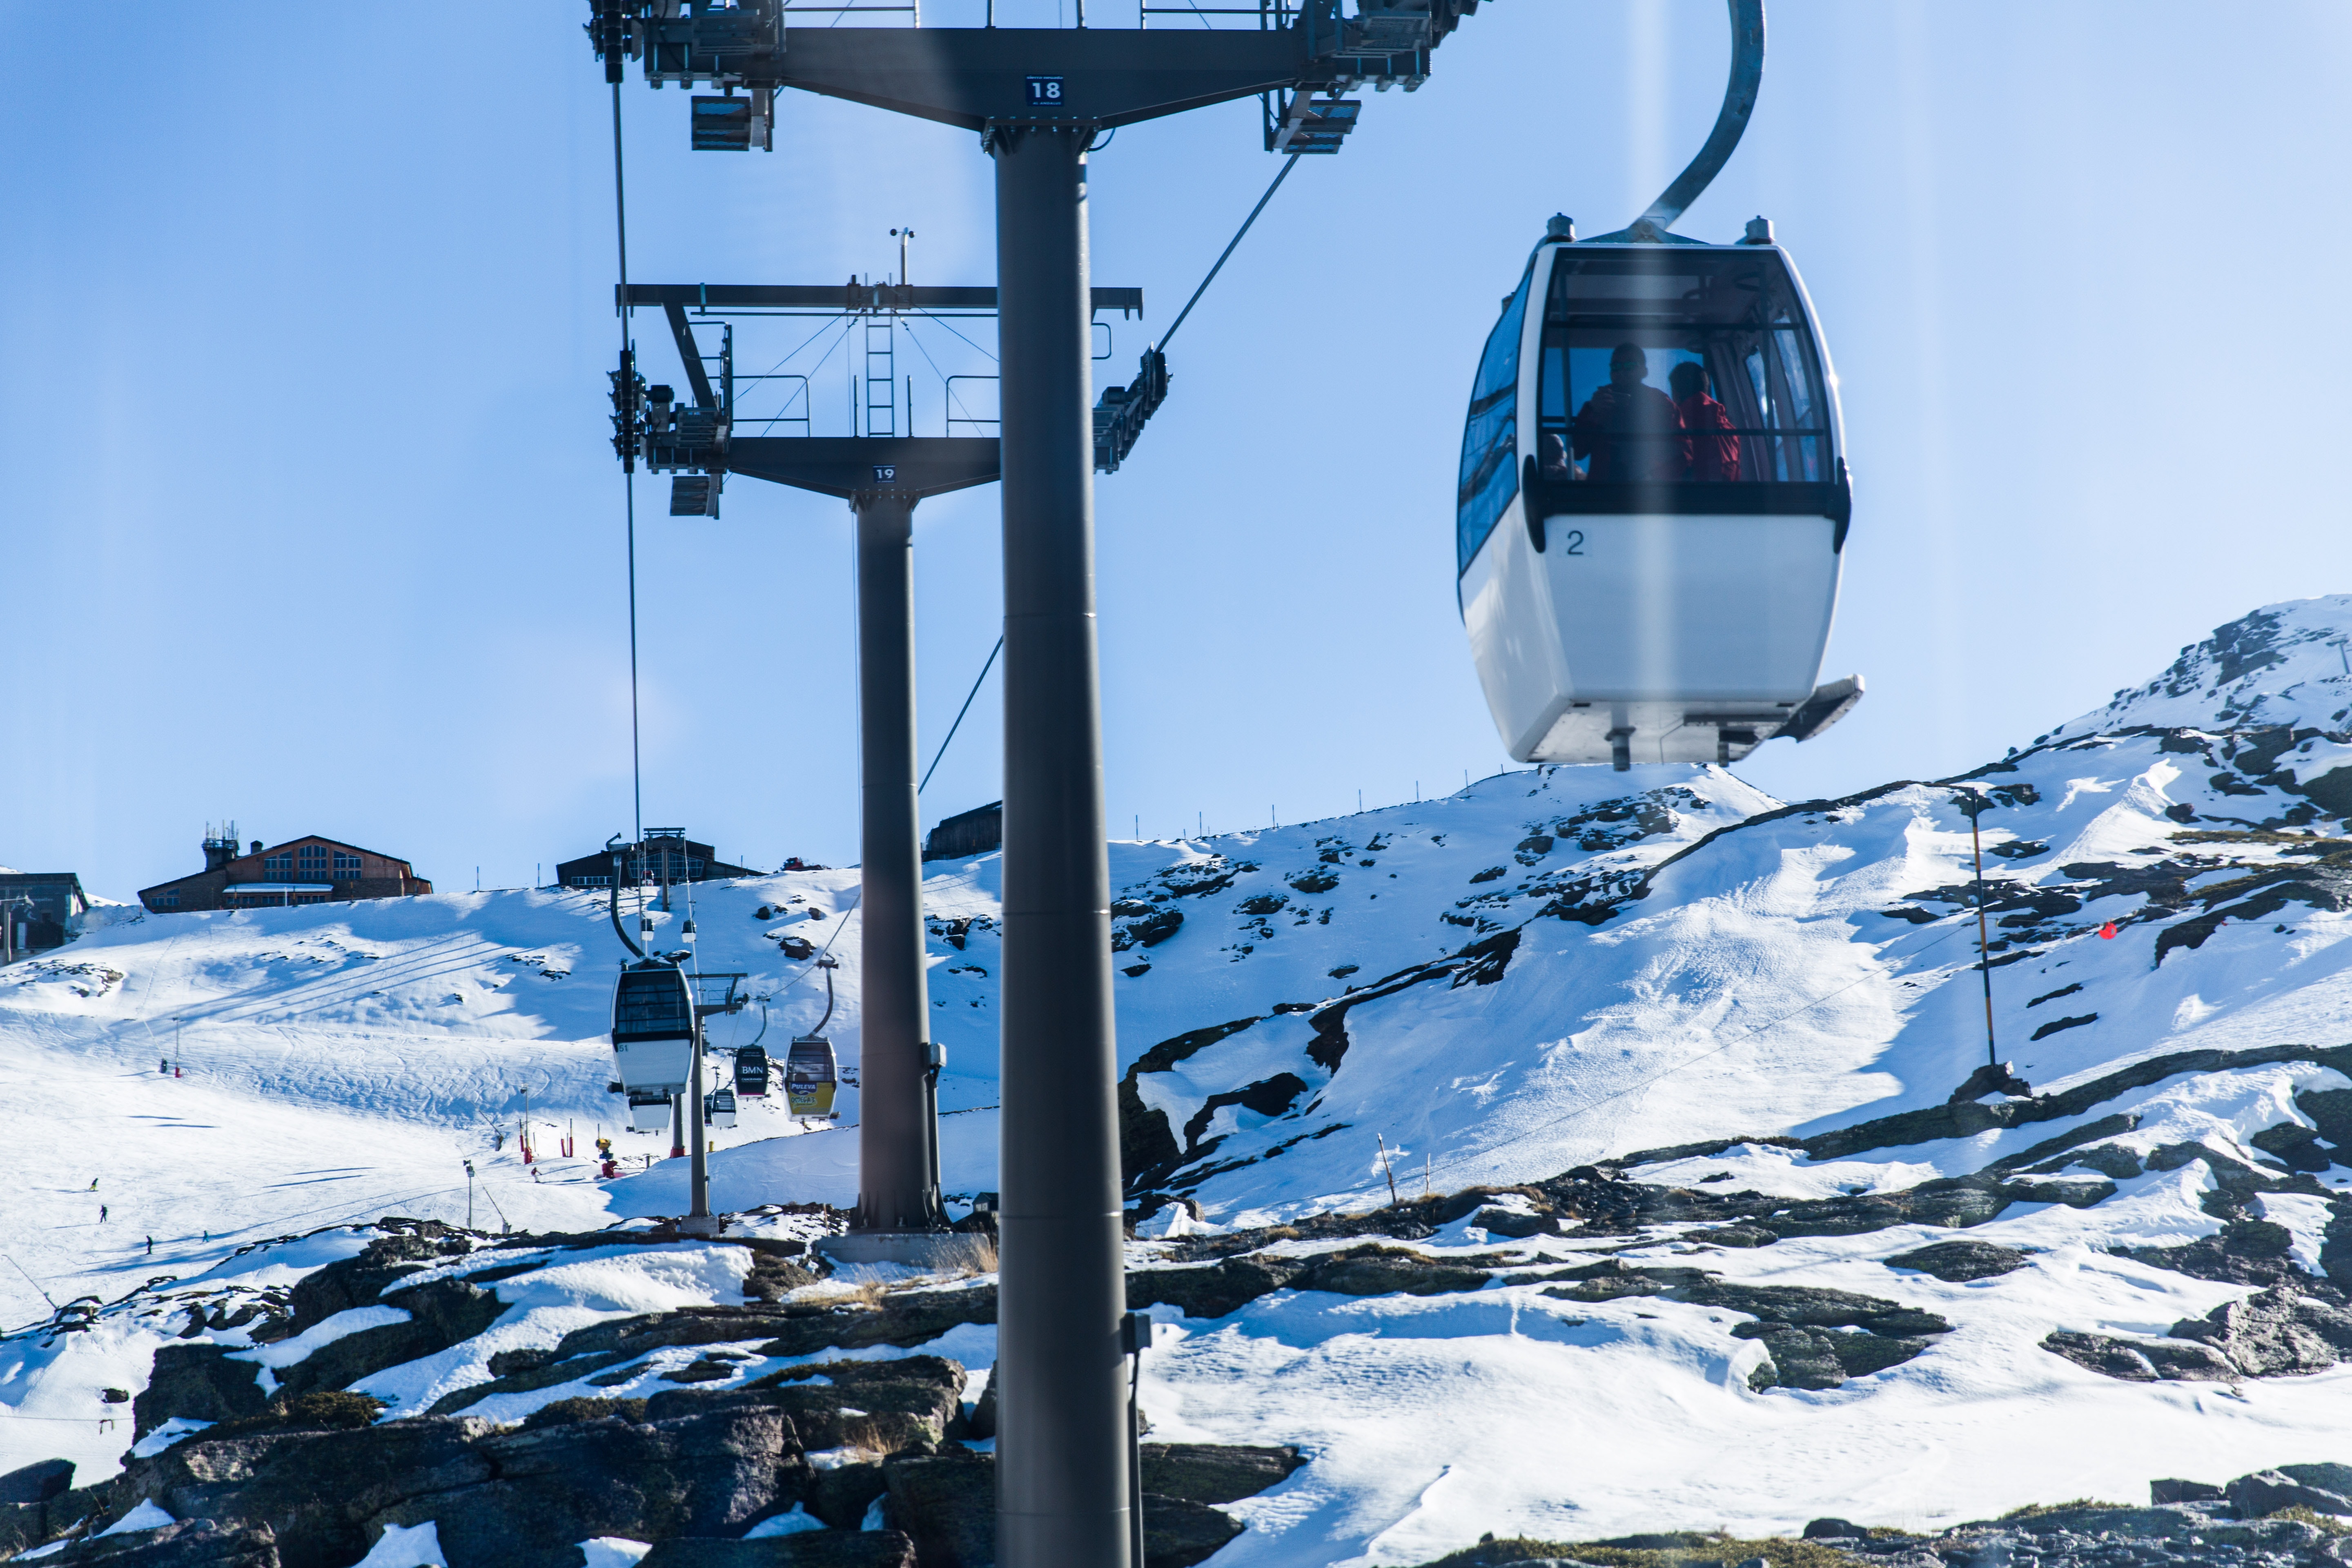 Plus de la moitié des stations de ski européennes pourraient faire face à un risque « très élevé » de manque de neige